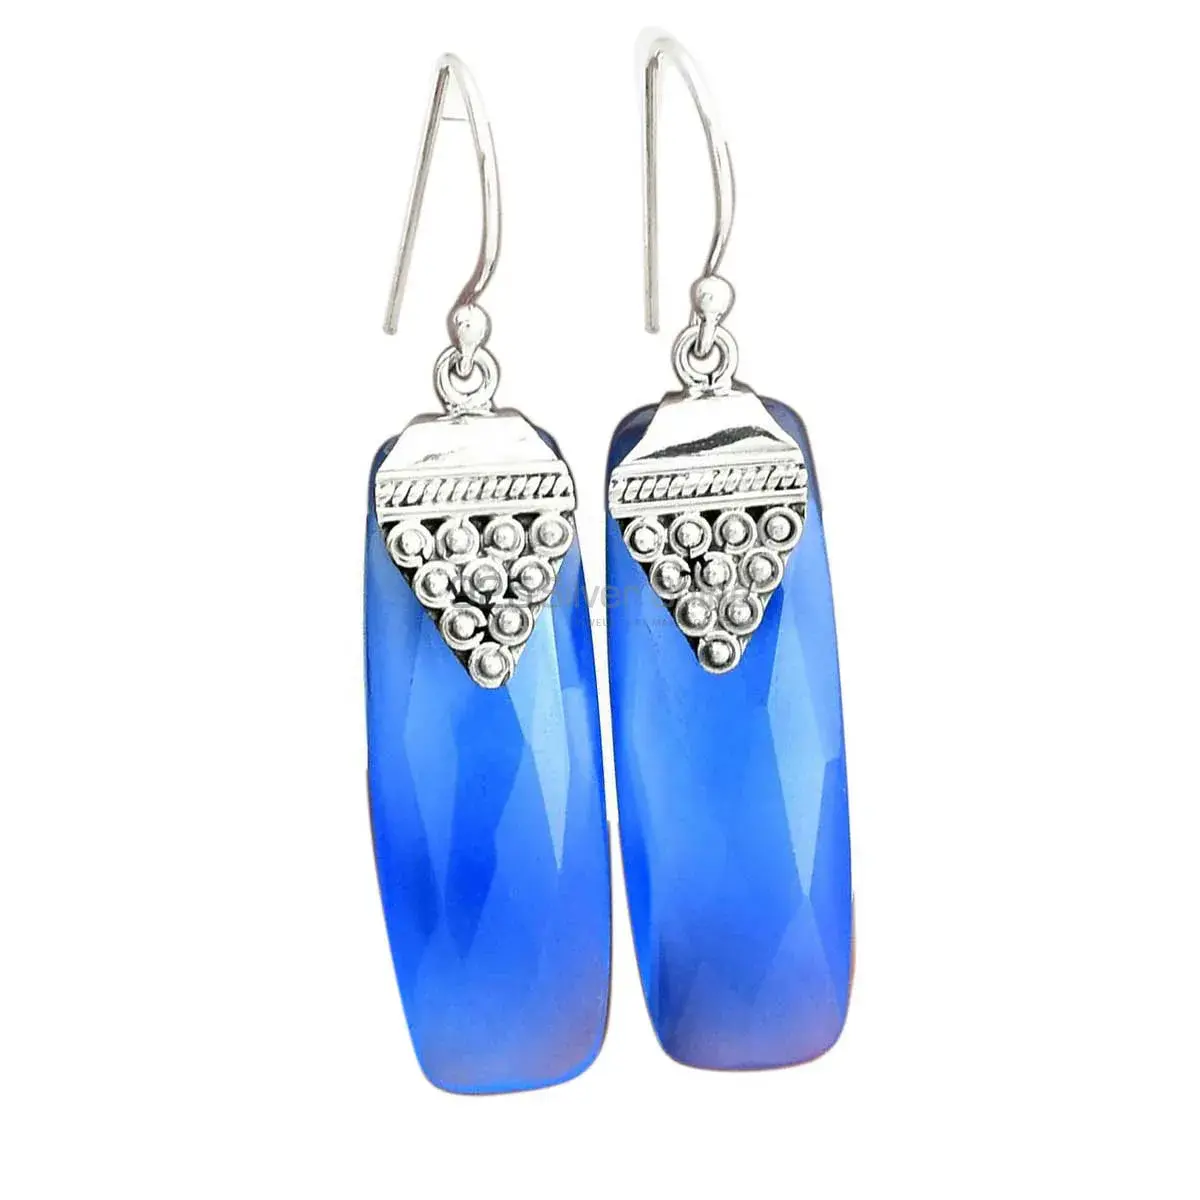 Best Design 925 Sterling Silver Handmade Earrings Suppliers In Chalcedony Gemstone Jewelry 925SE2478